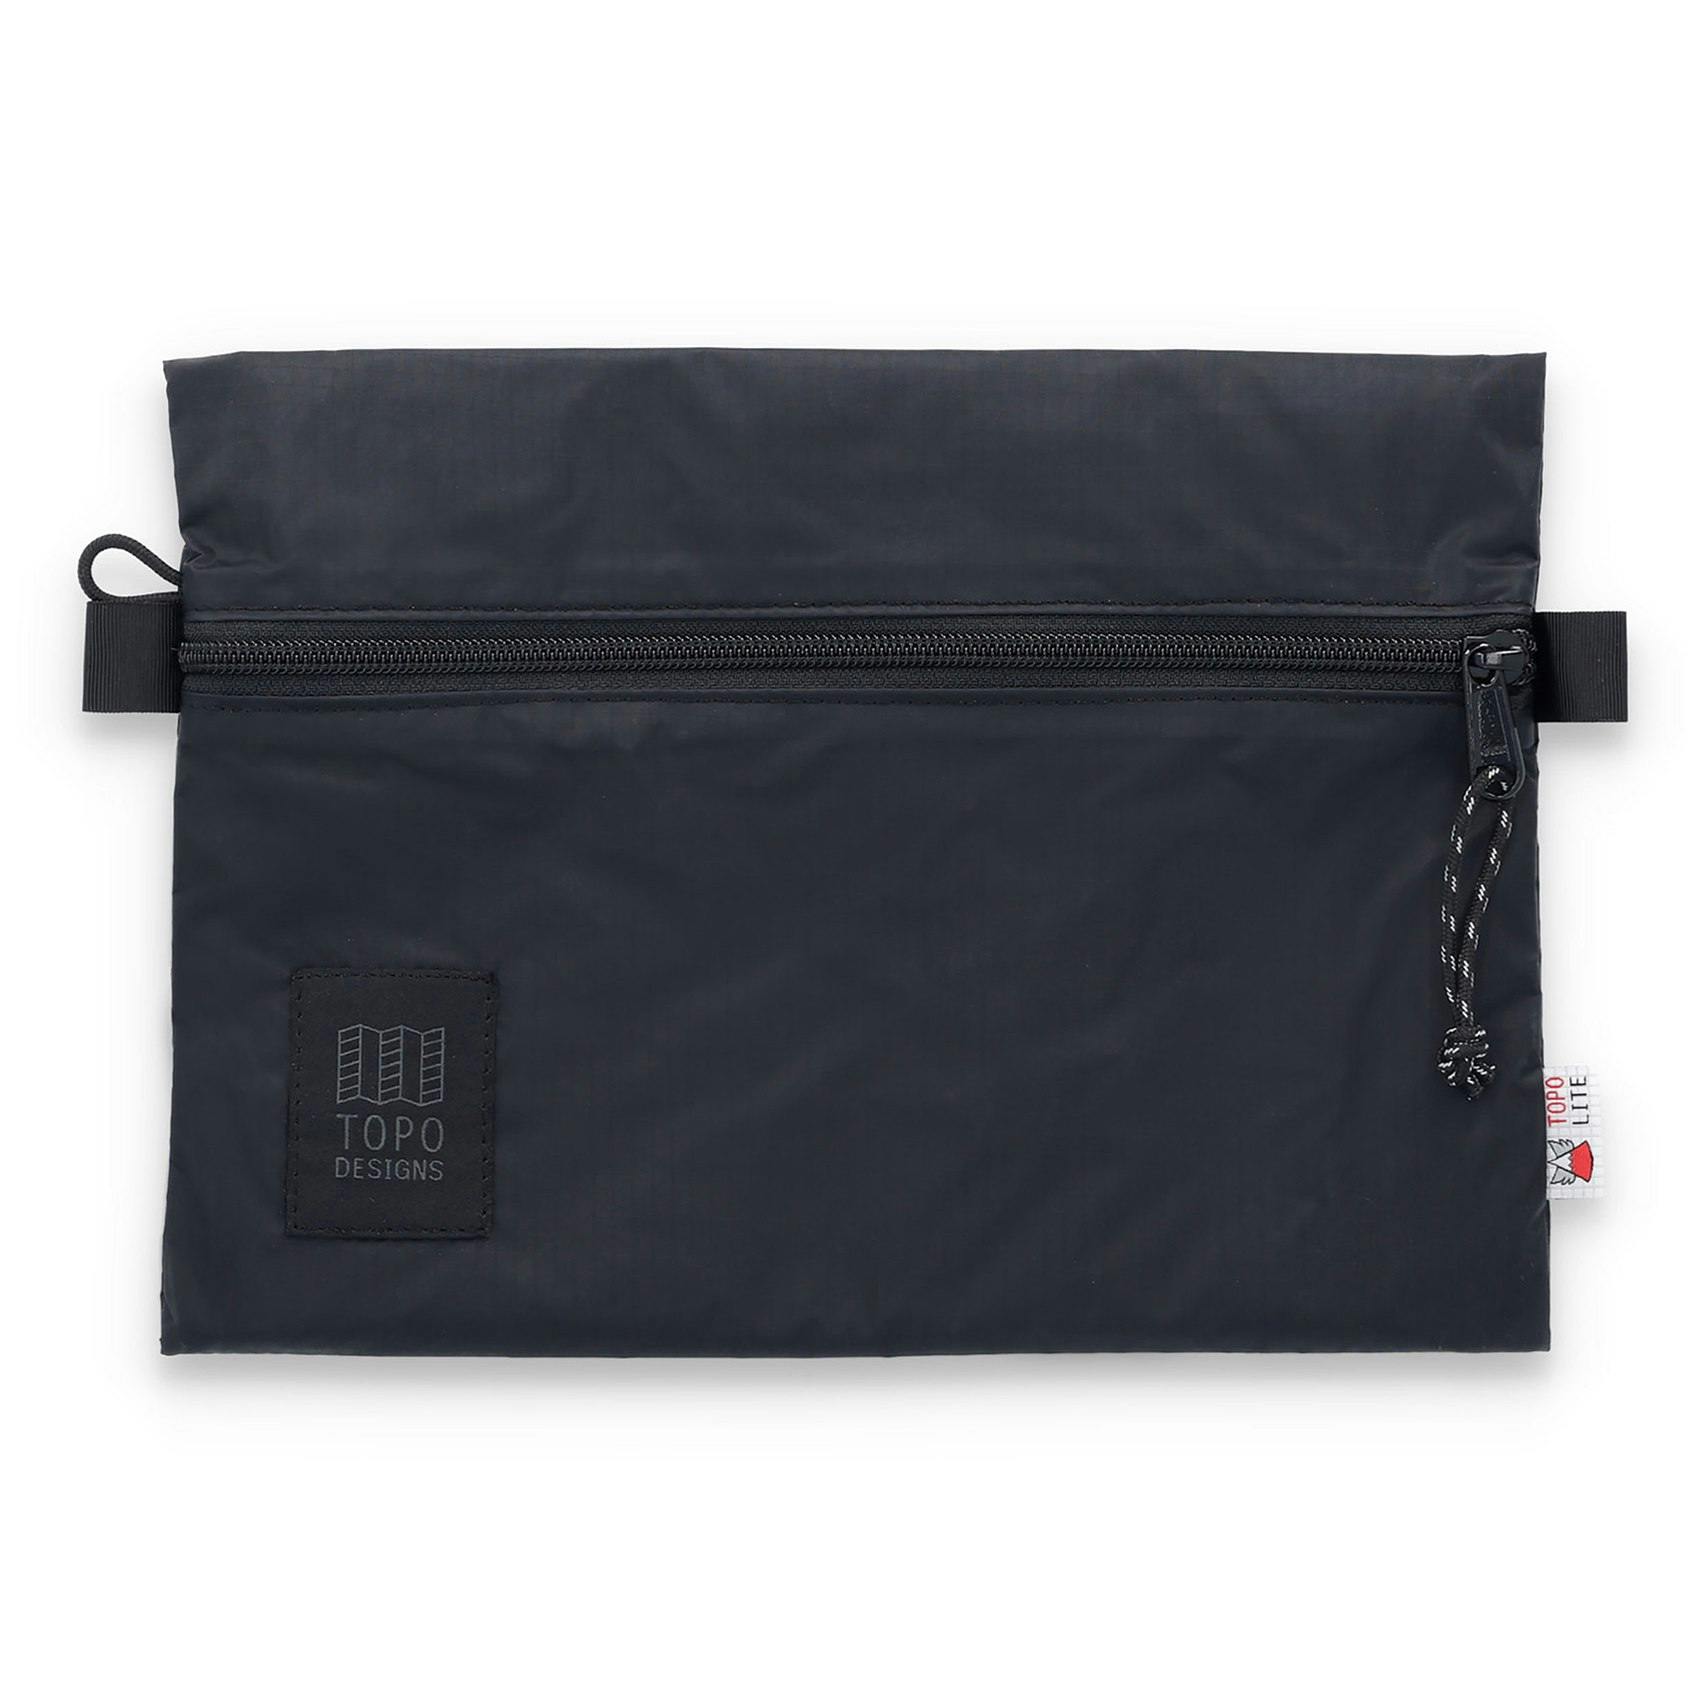 TopoLite Accessory Bag - Exclusive